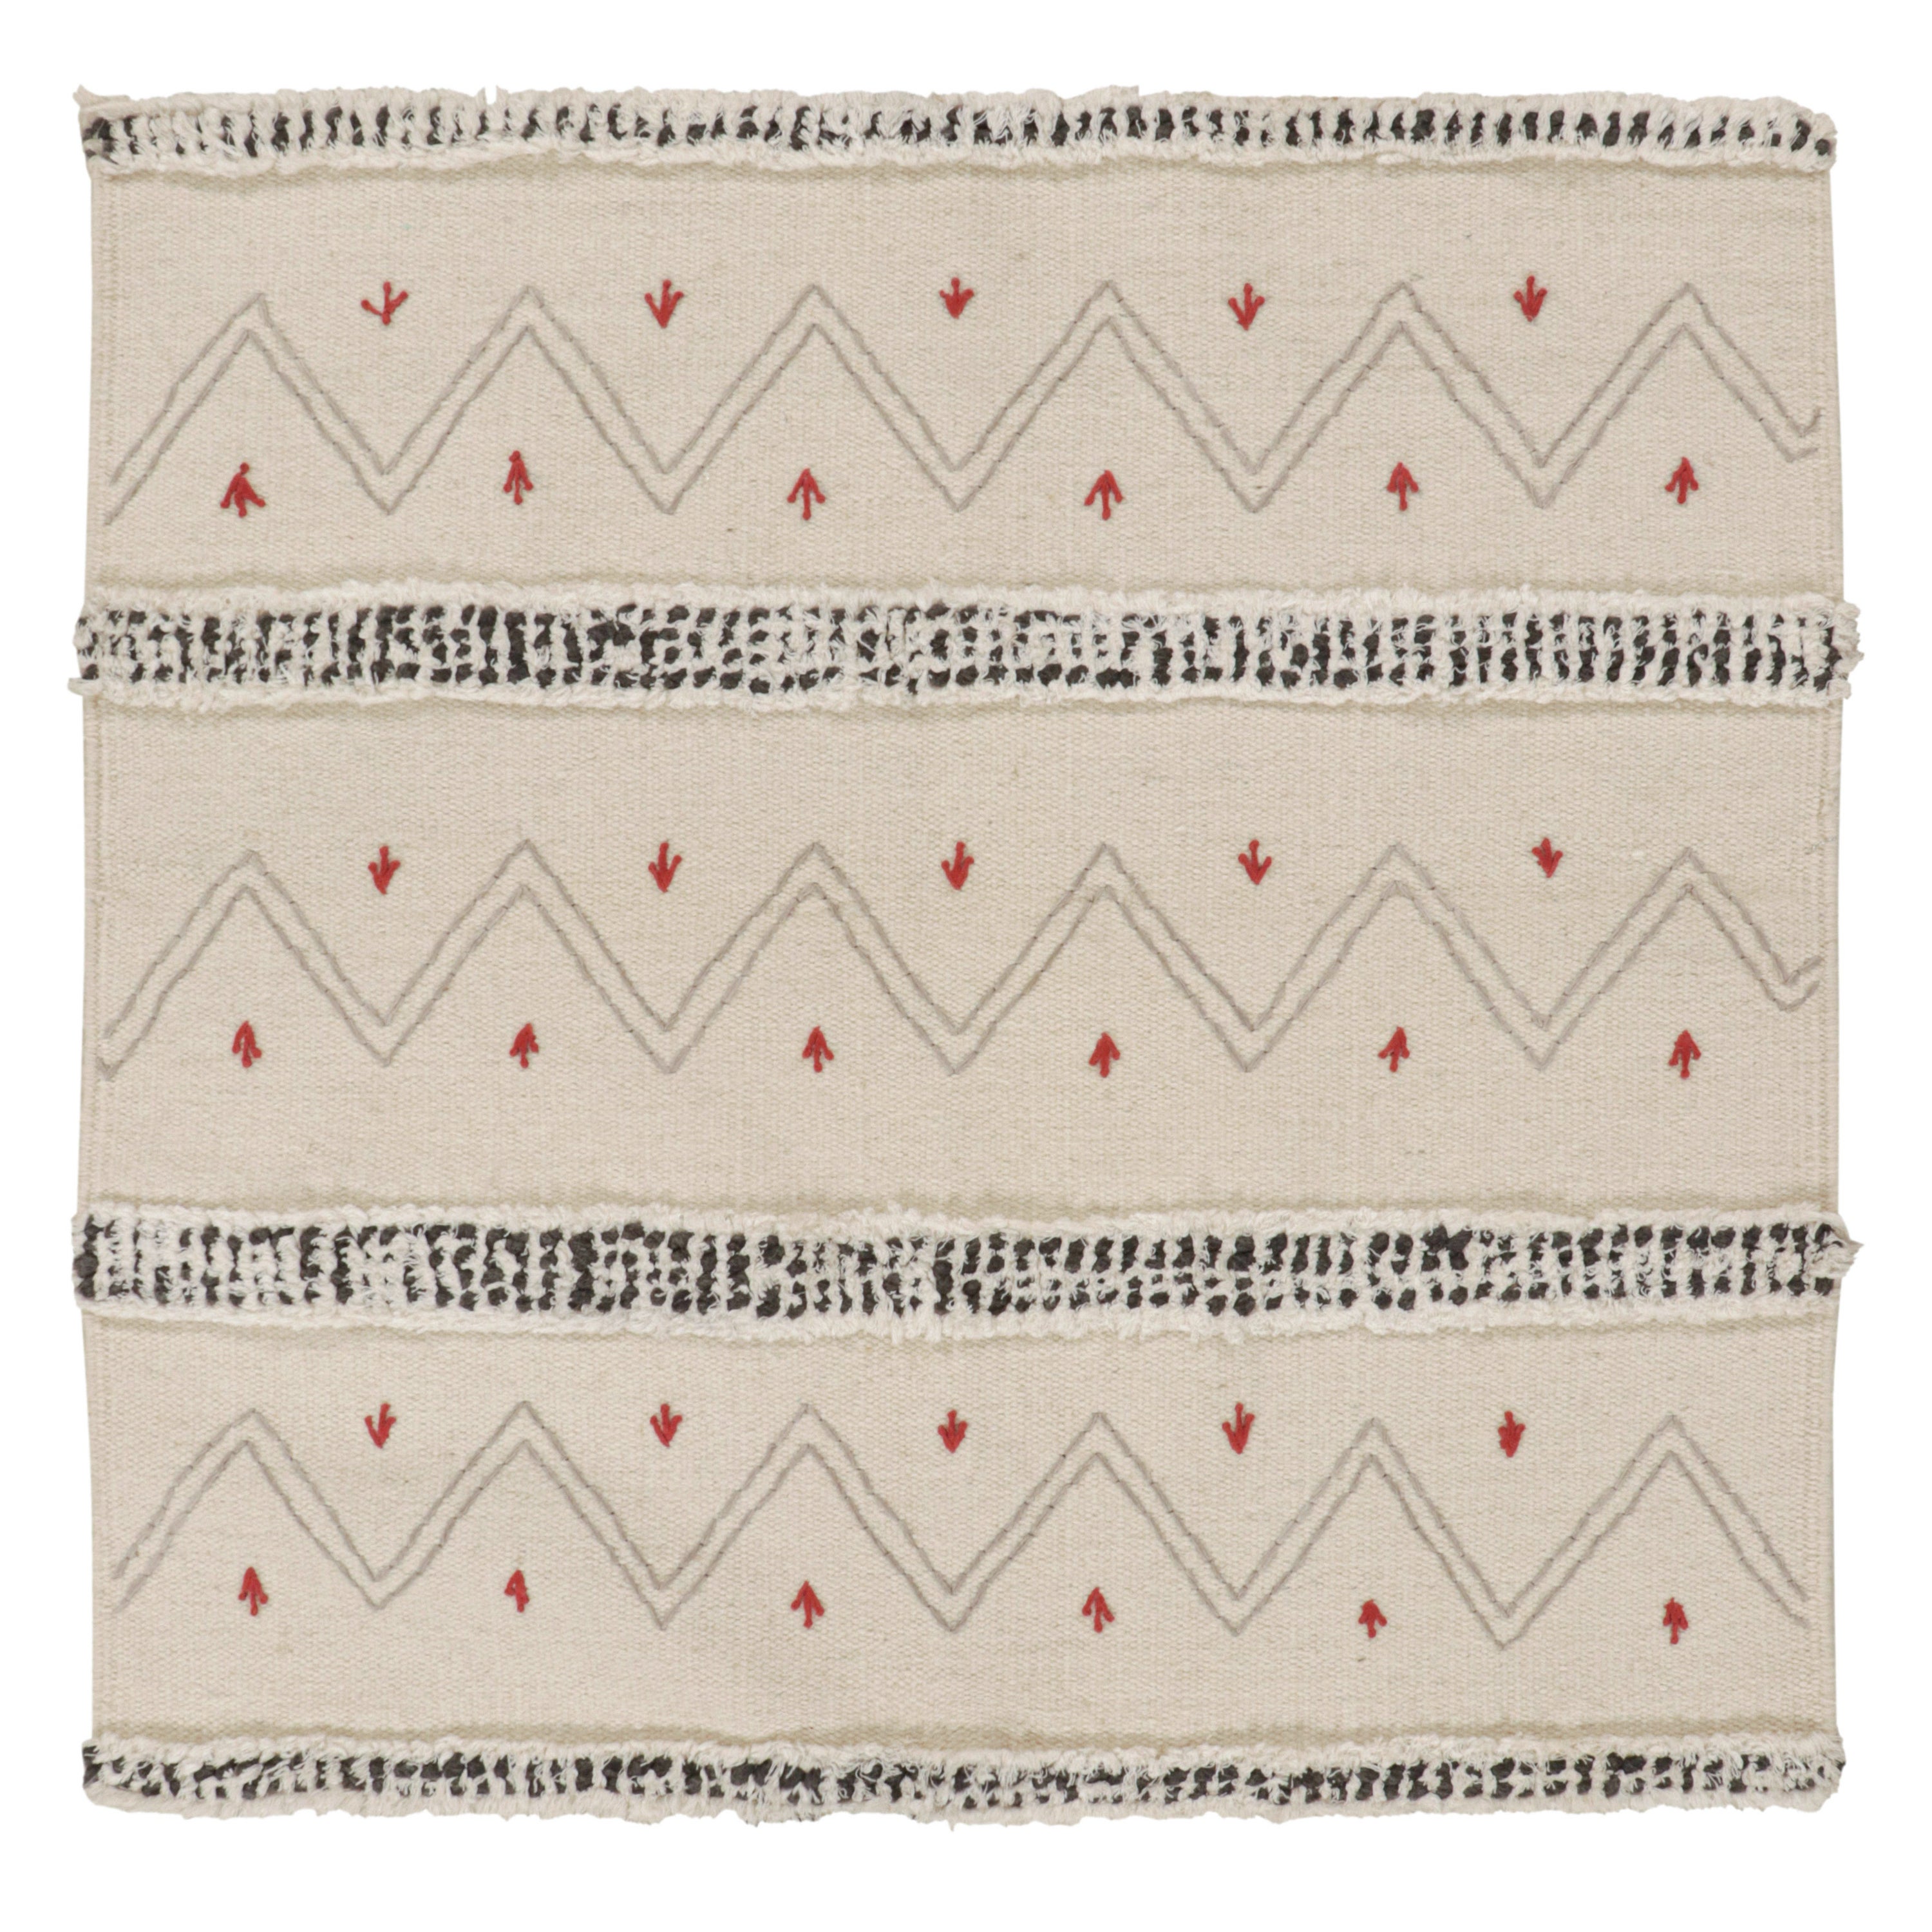 Stammesstil-Kilim von Rug & Kilim mit geometrischen Mustern in Weiß, Grau und Rot